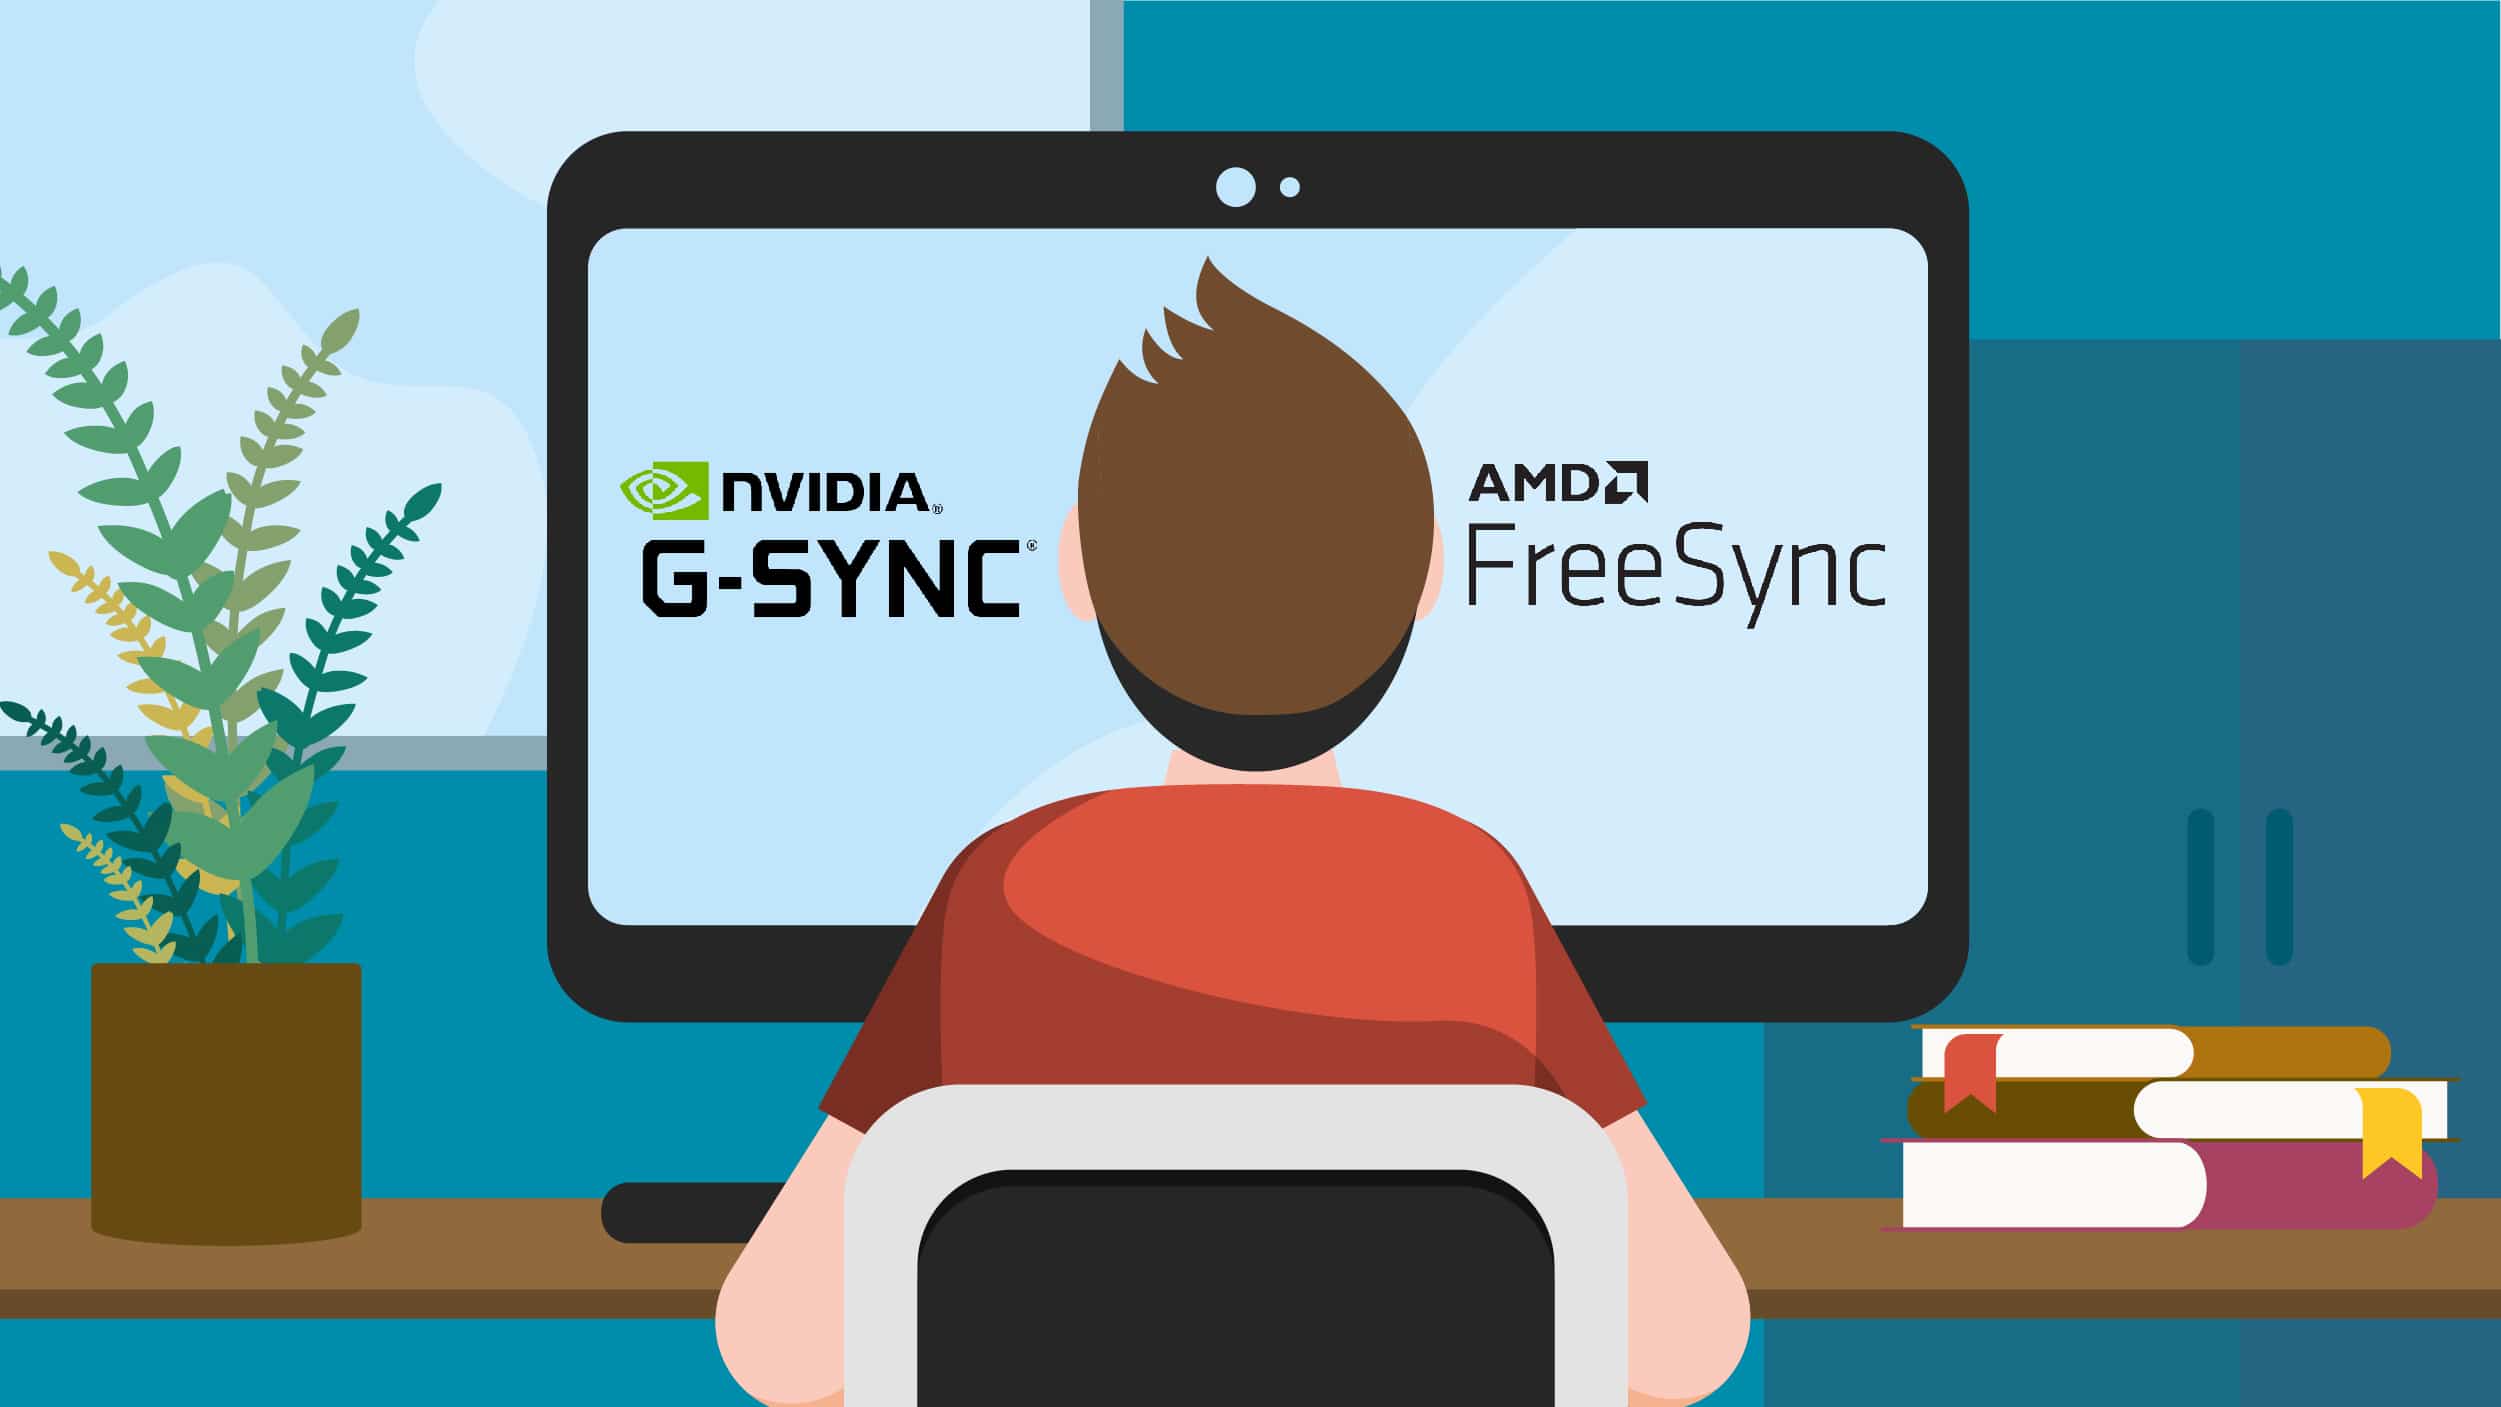 Nvidia G-sync vs AMD free Sync